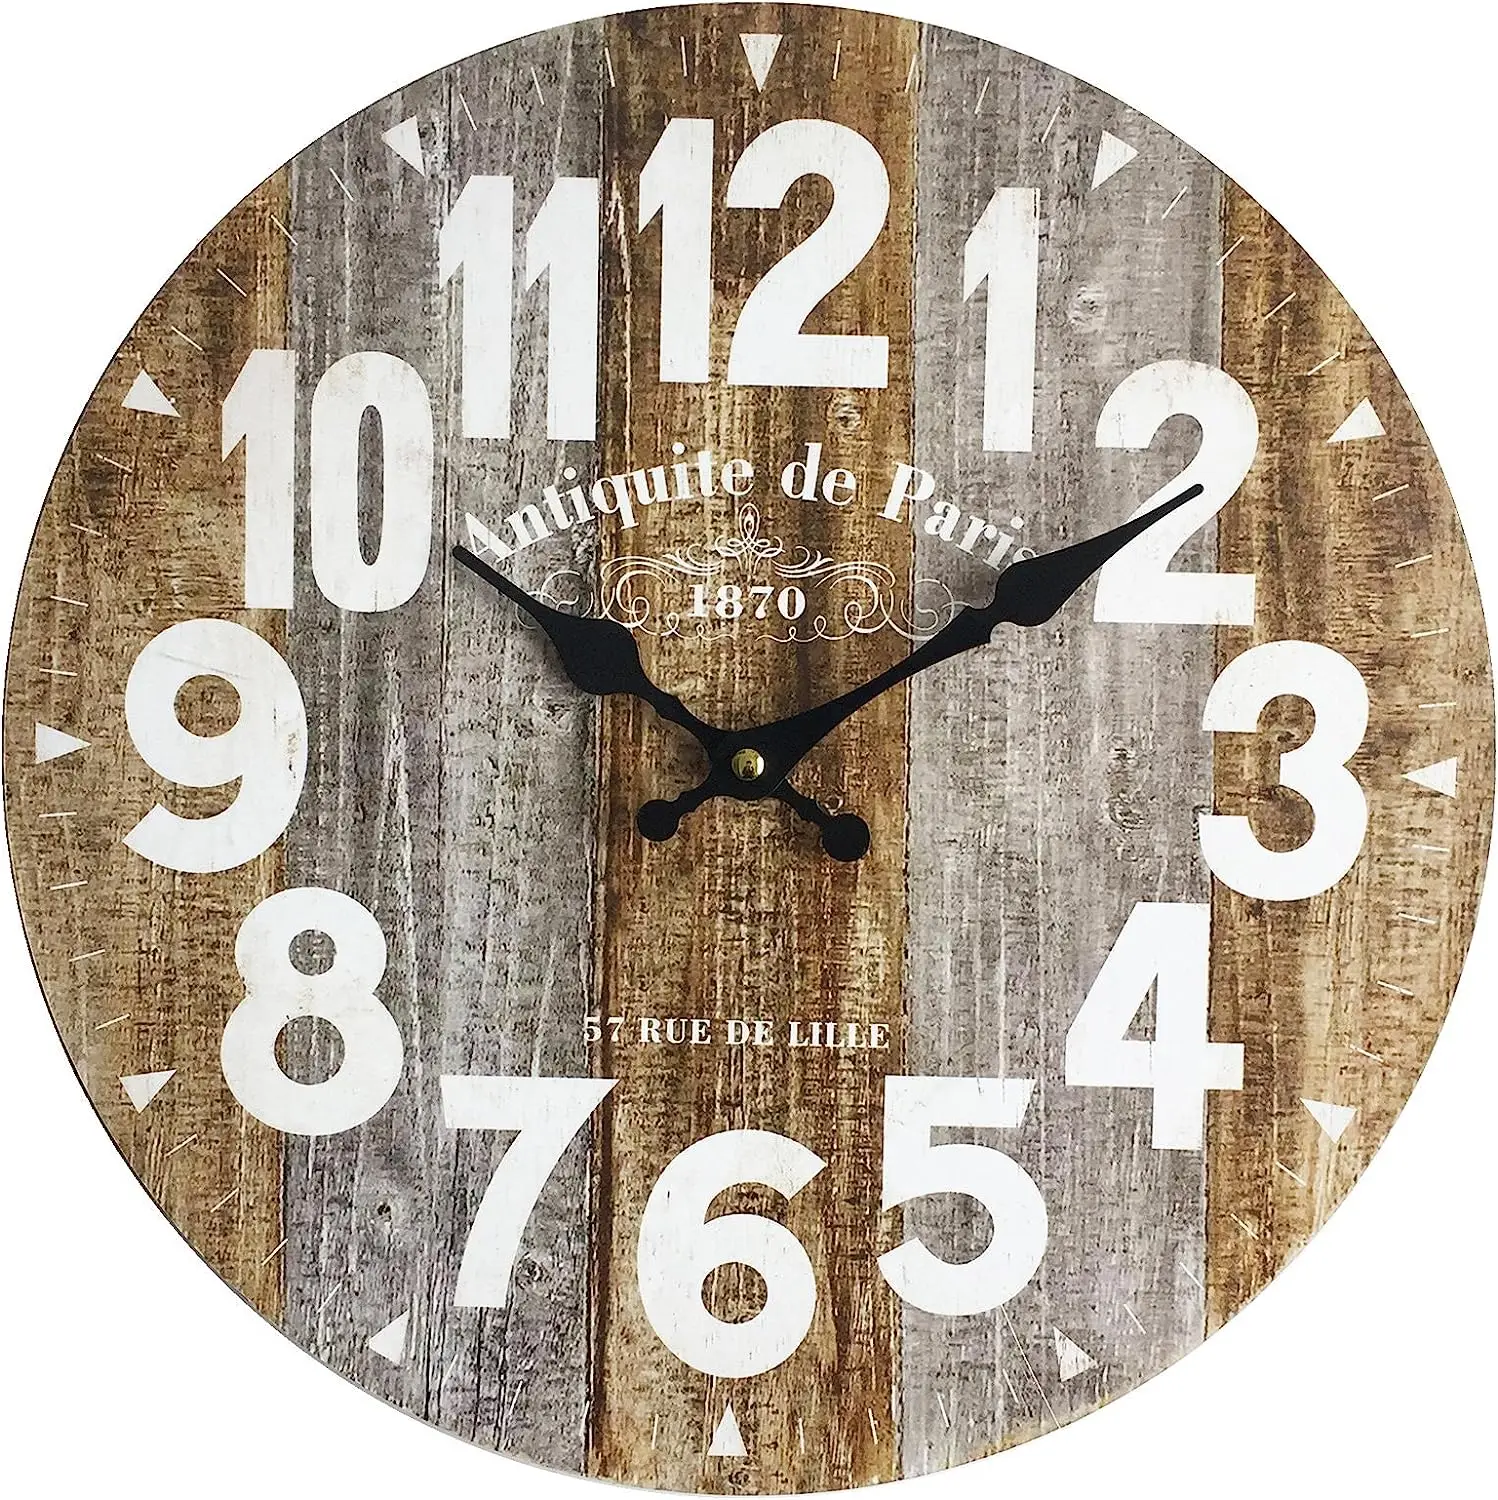 

Reloj de Pared, Relojes industriales para Colgar, Madera MDF, analógico, para Cocina, Sala de Estar - Medidas Ø 34 cm x P 4 cm